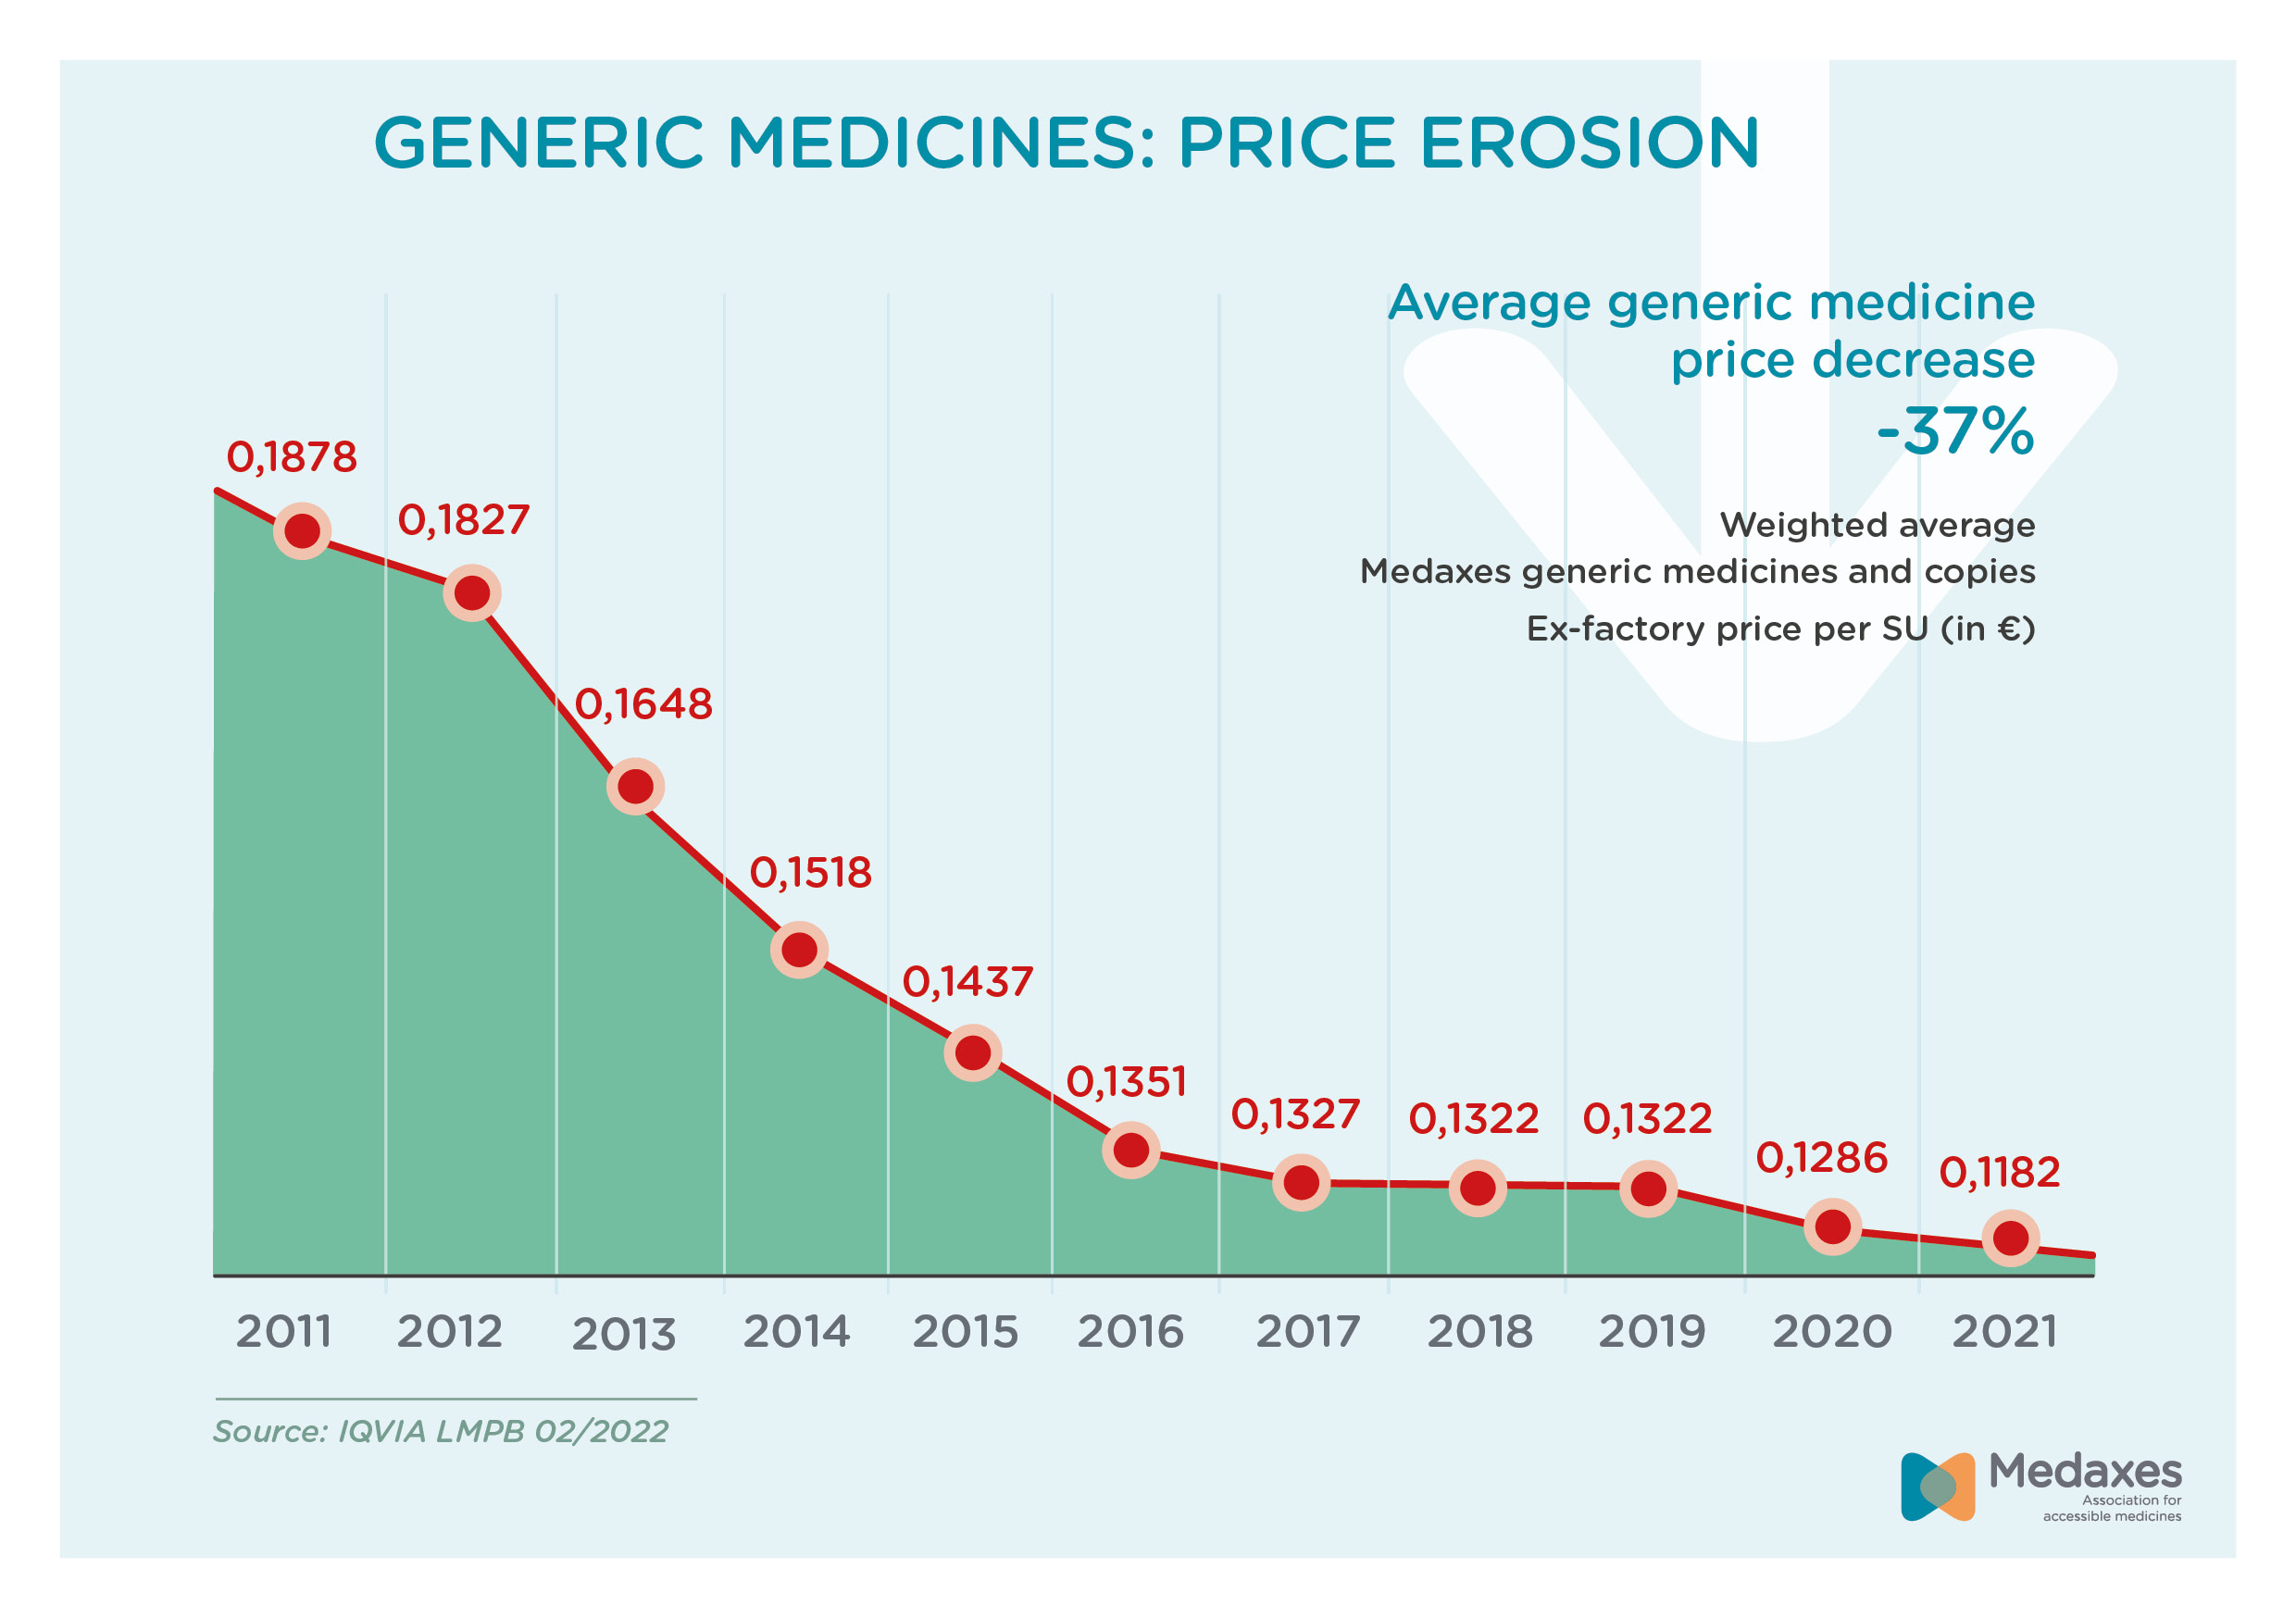 Medaxes generic medicines price erosion